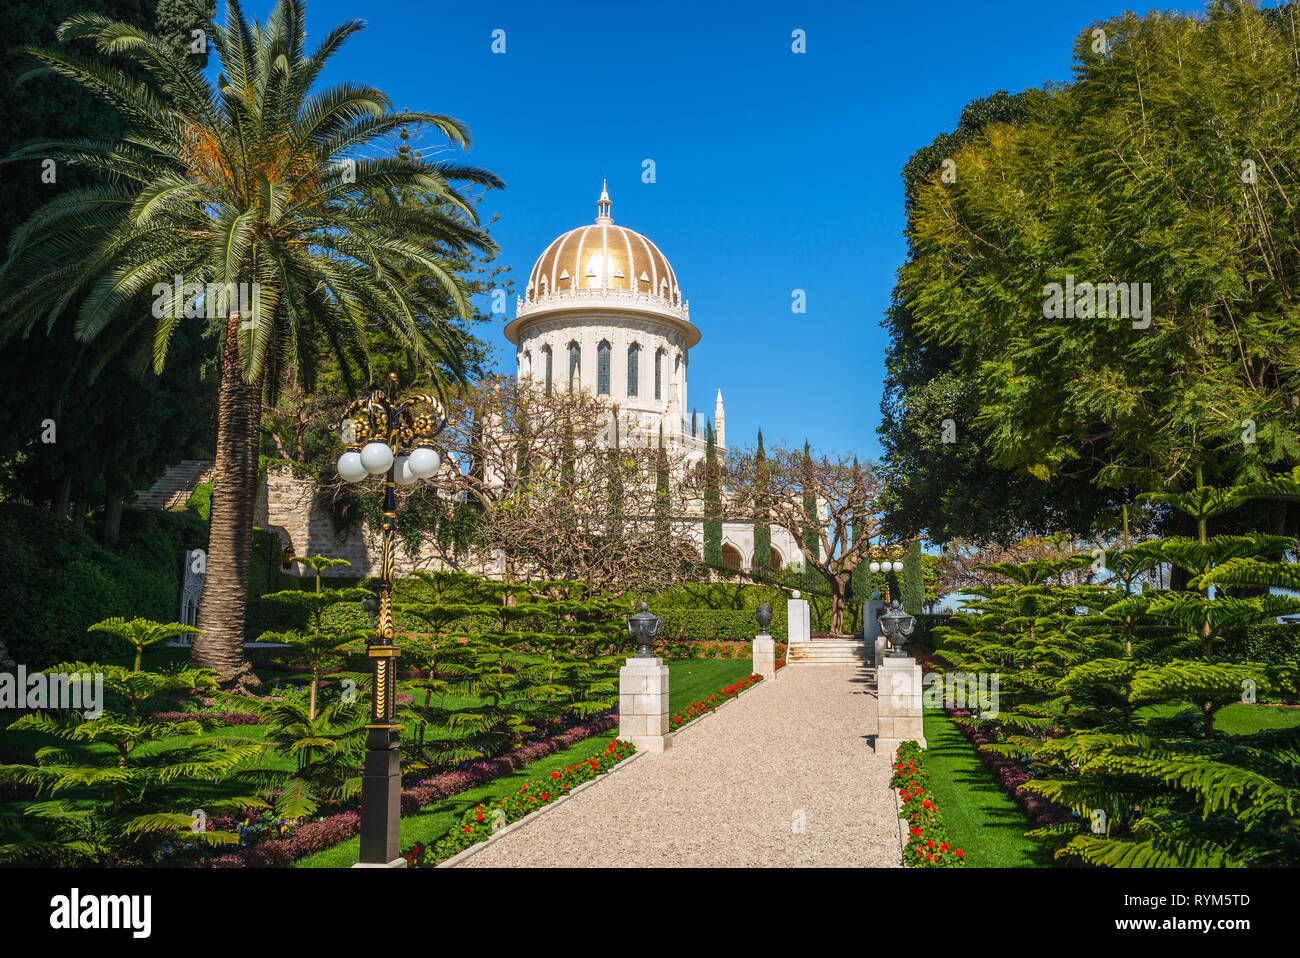 Santuario del Bab nel giardino pensile, haifa, Israele Foto Stock